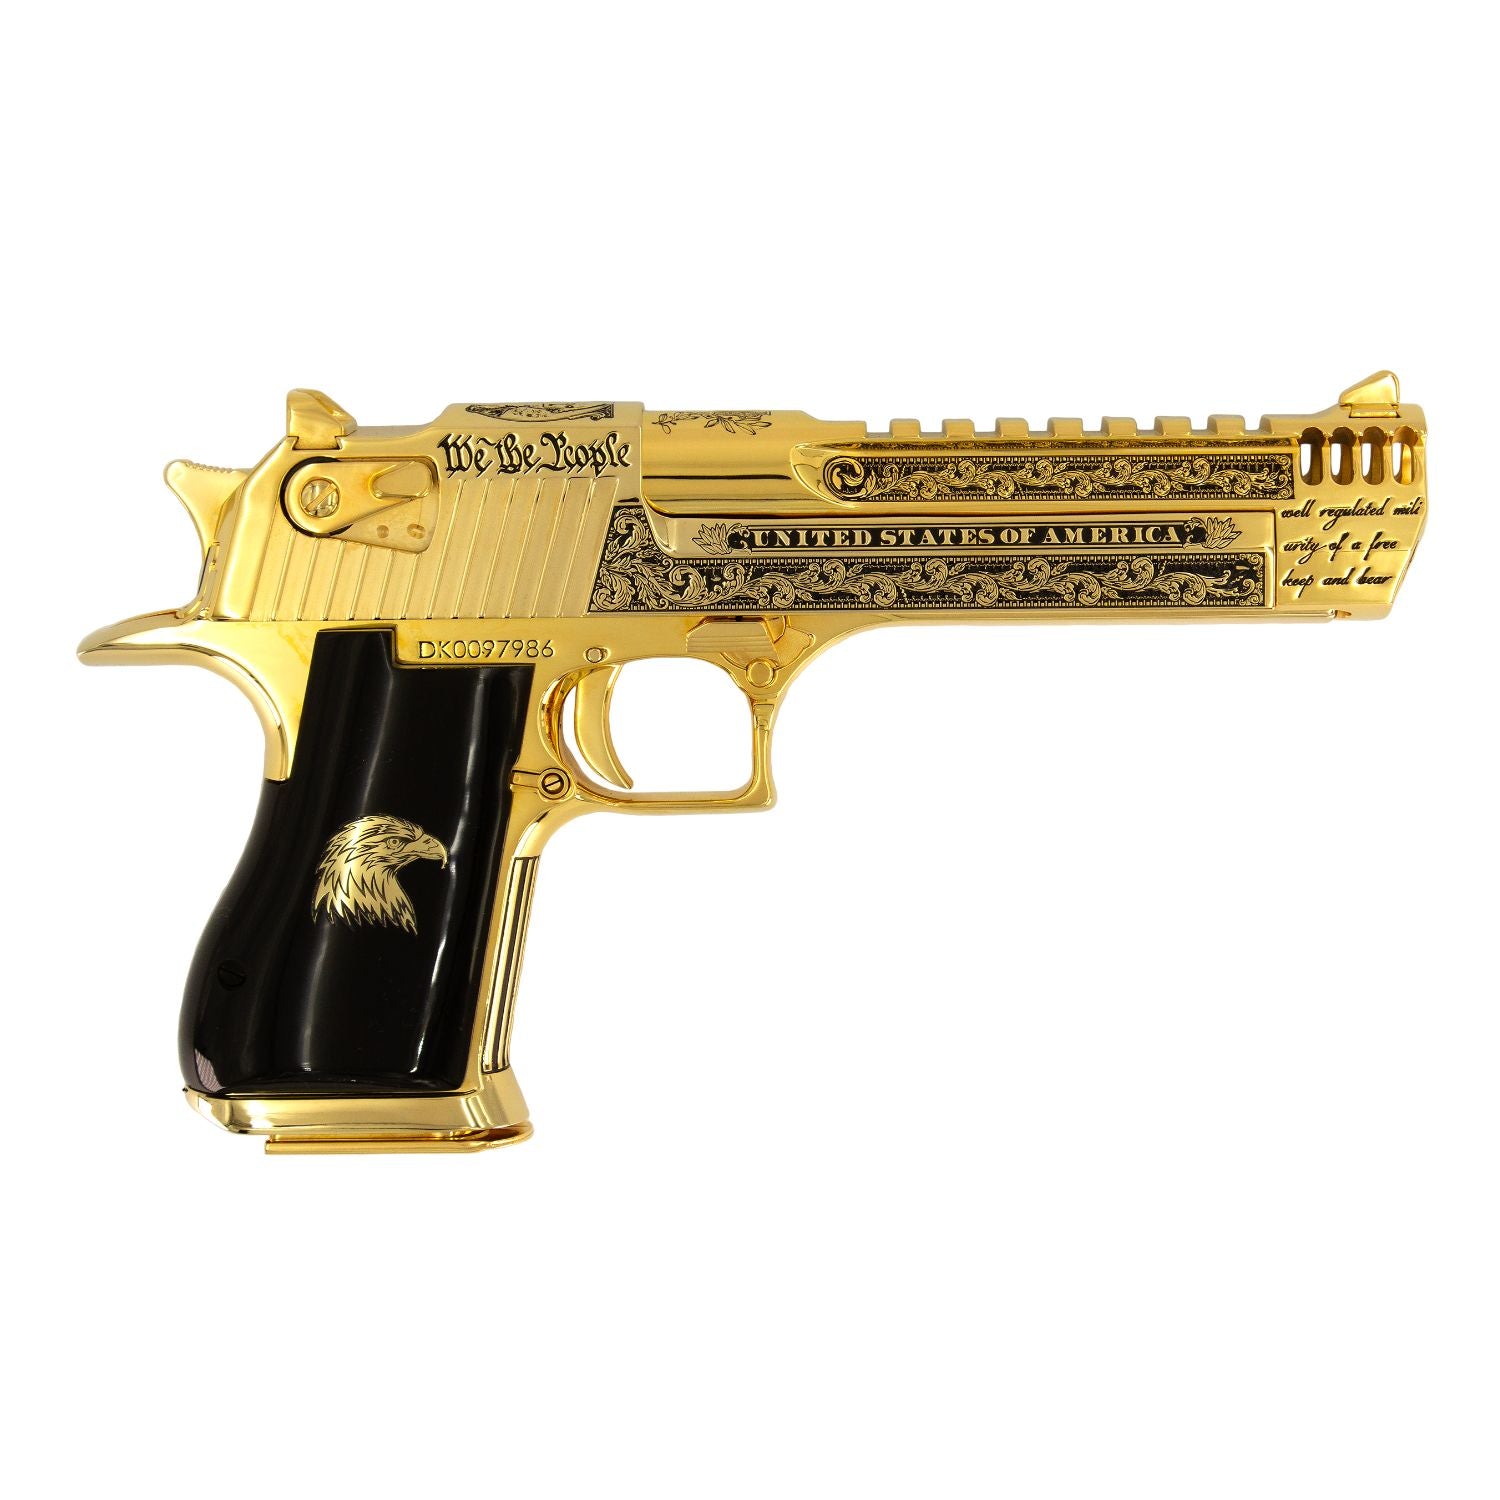 Desert Eagle Patriot 44 Rem Mag, 6", 24kt Gold Plated and Engraved, Magnum Research, SKU: 6966446620774, 761226032281 